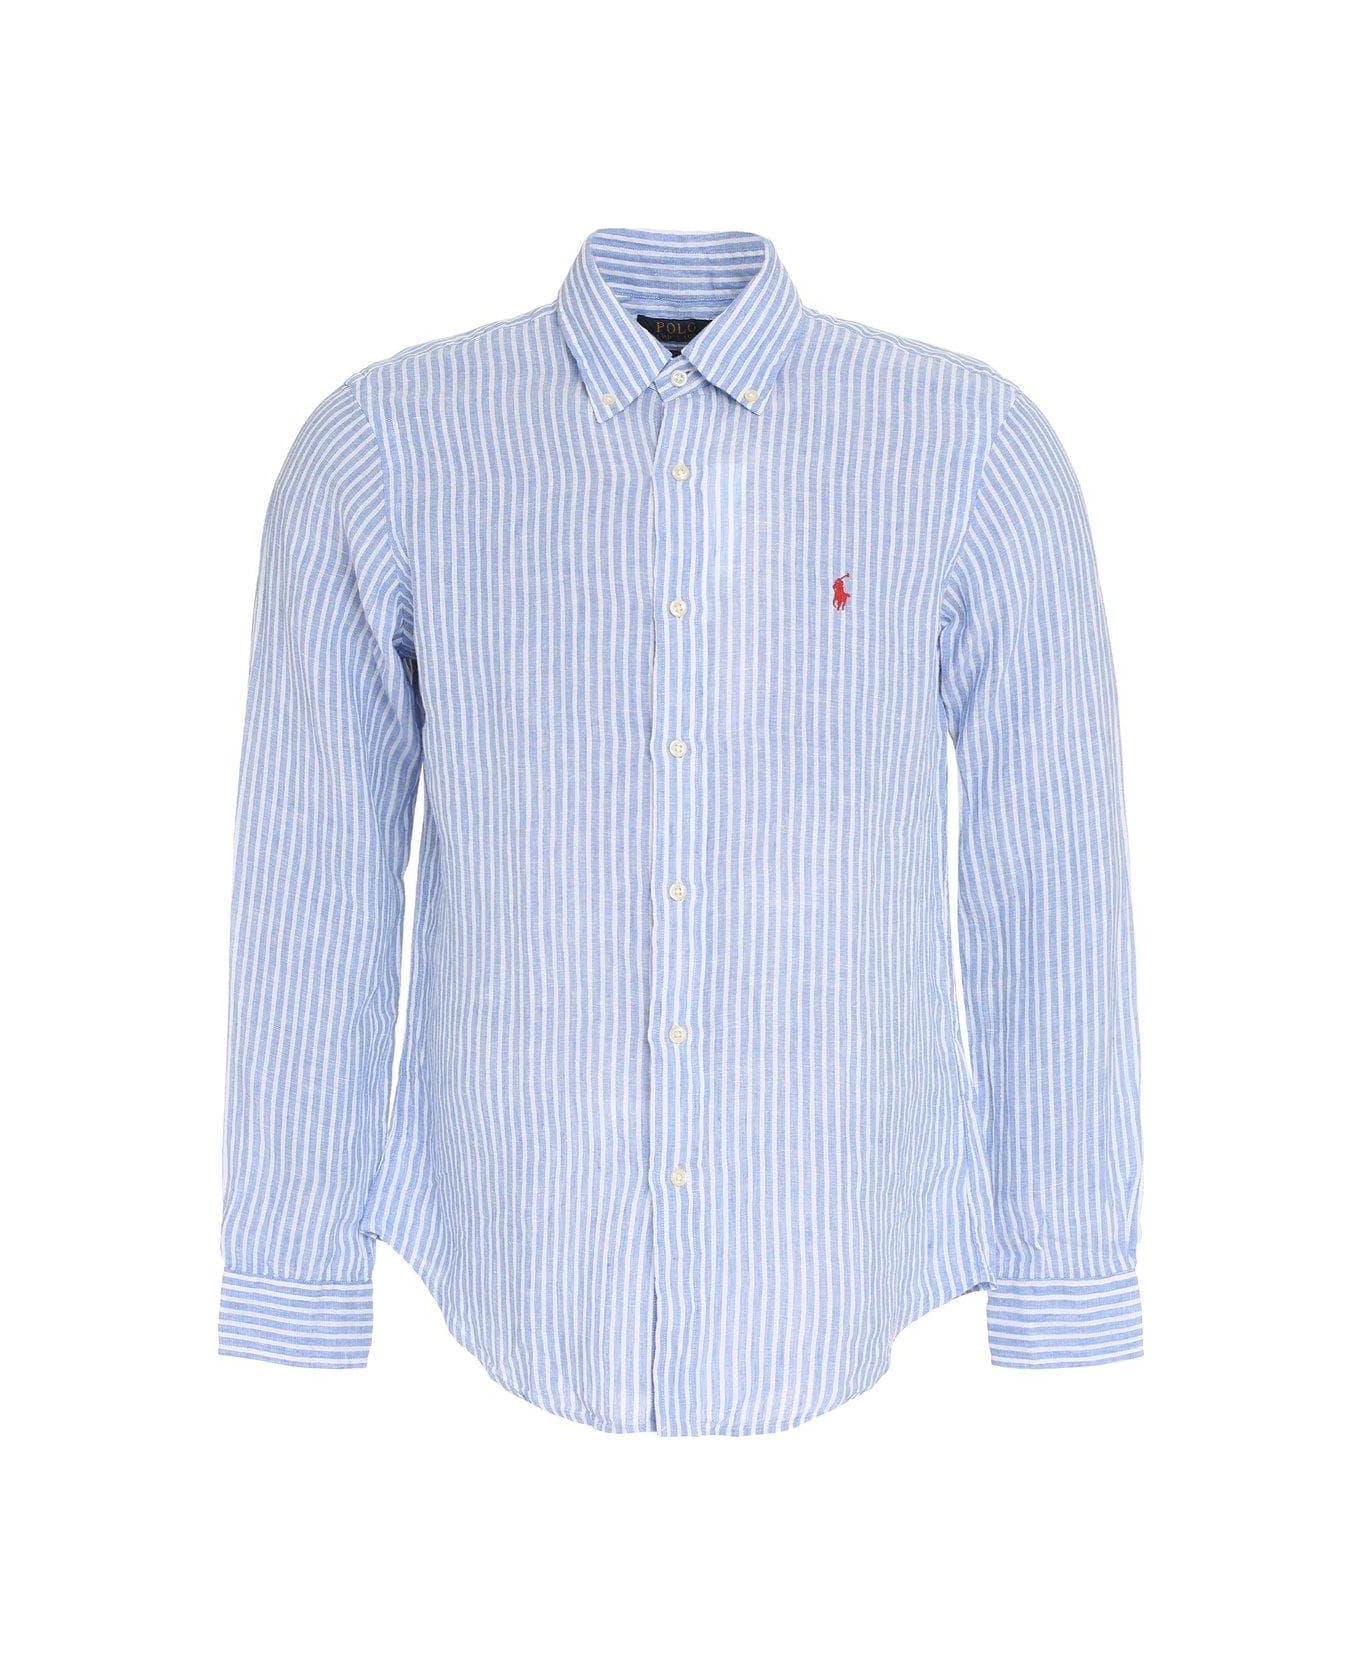 Polo Ralph Lauren Striped Long-sleeved Shirt Polo Ralph Lauren - LIGHT BLUE